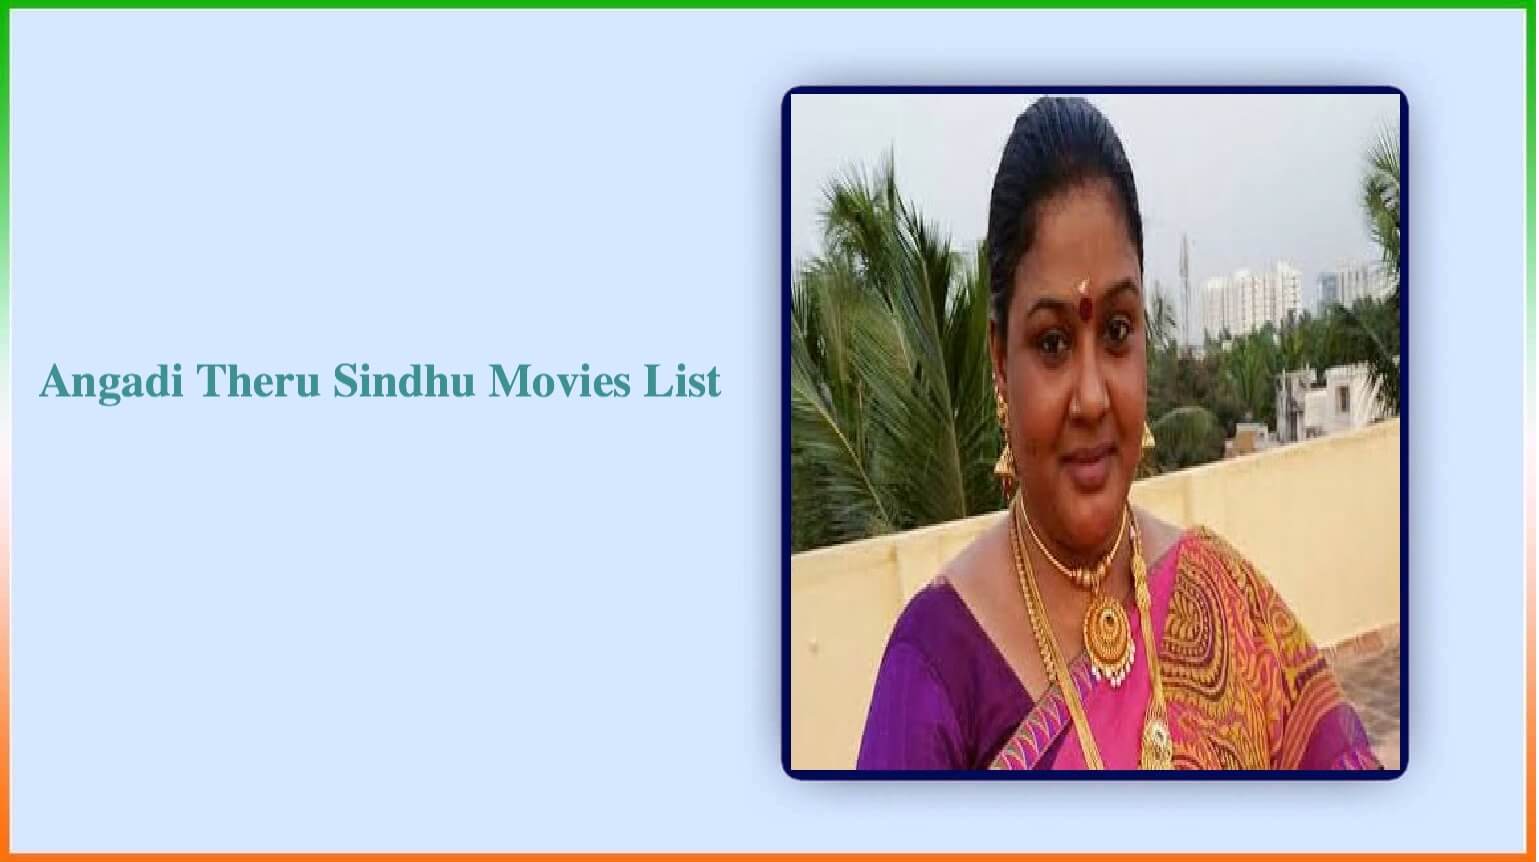 Angadi Theru Sindhu Movies List